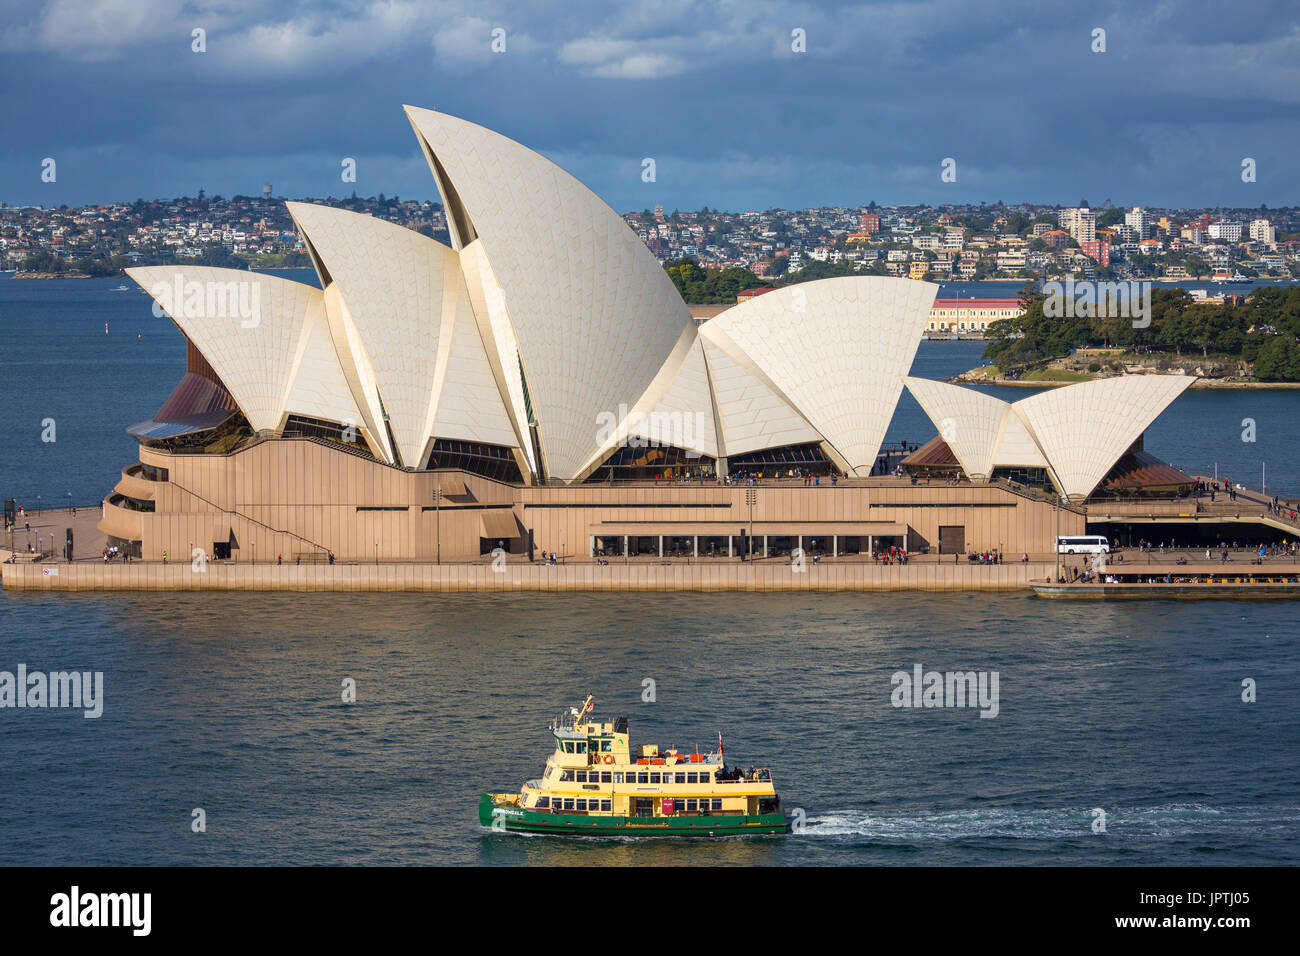 Sydney ferry passing by the sydney opera house,Sydney,Australia Stock Photo